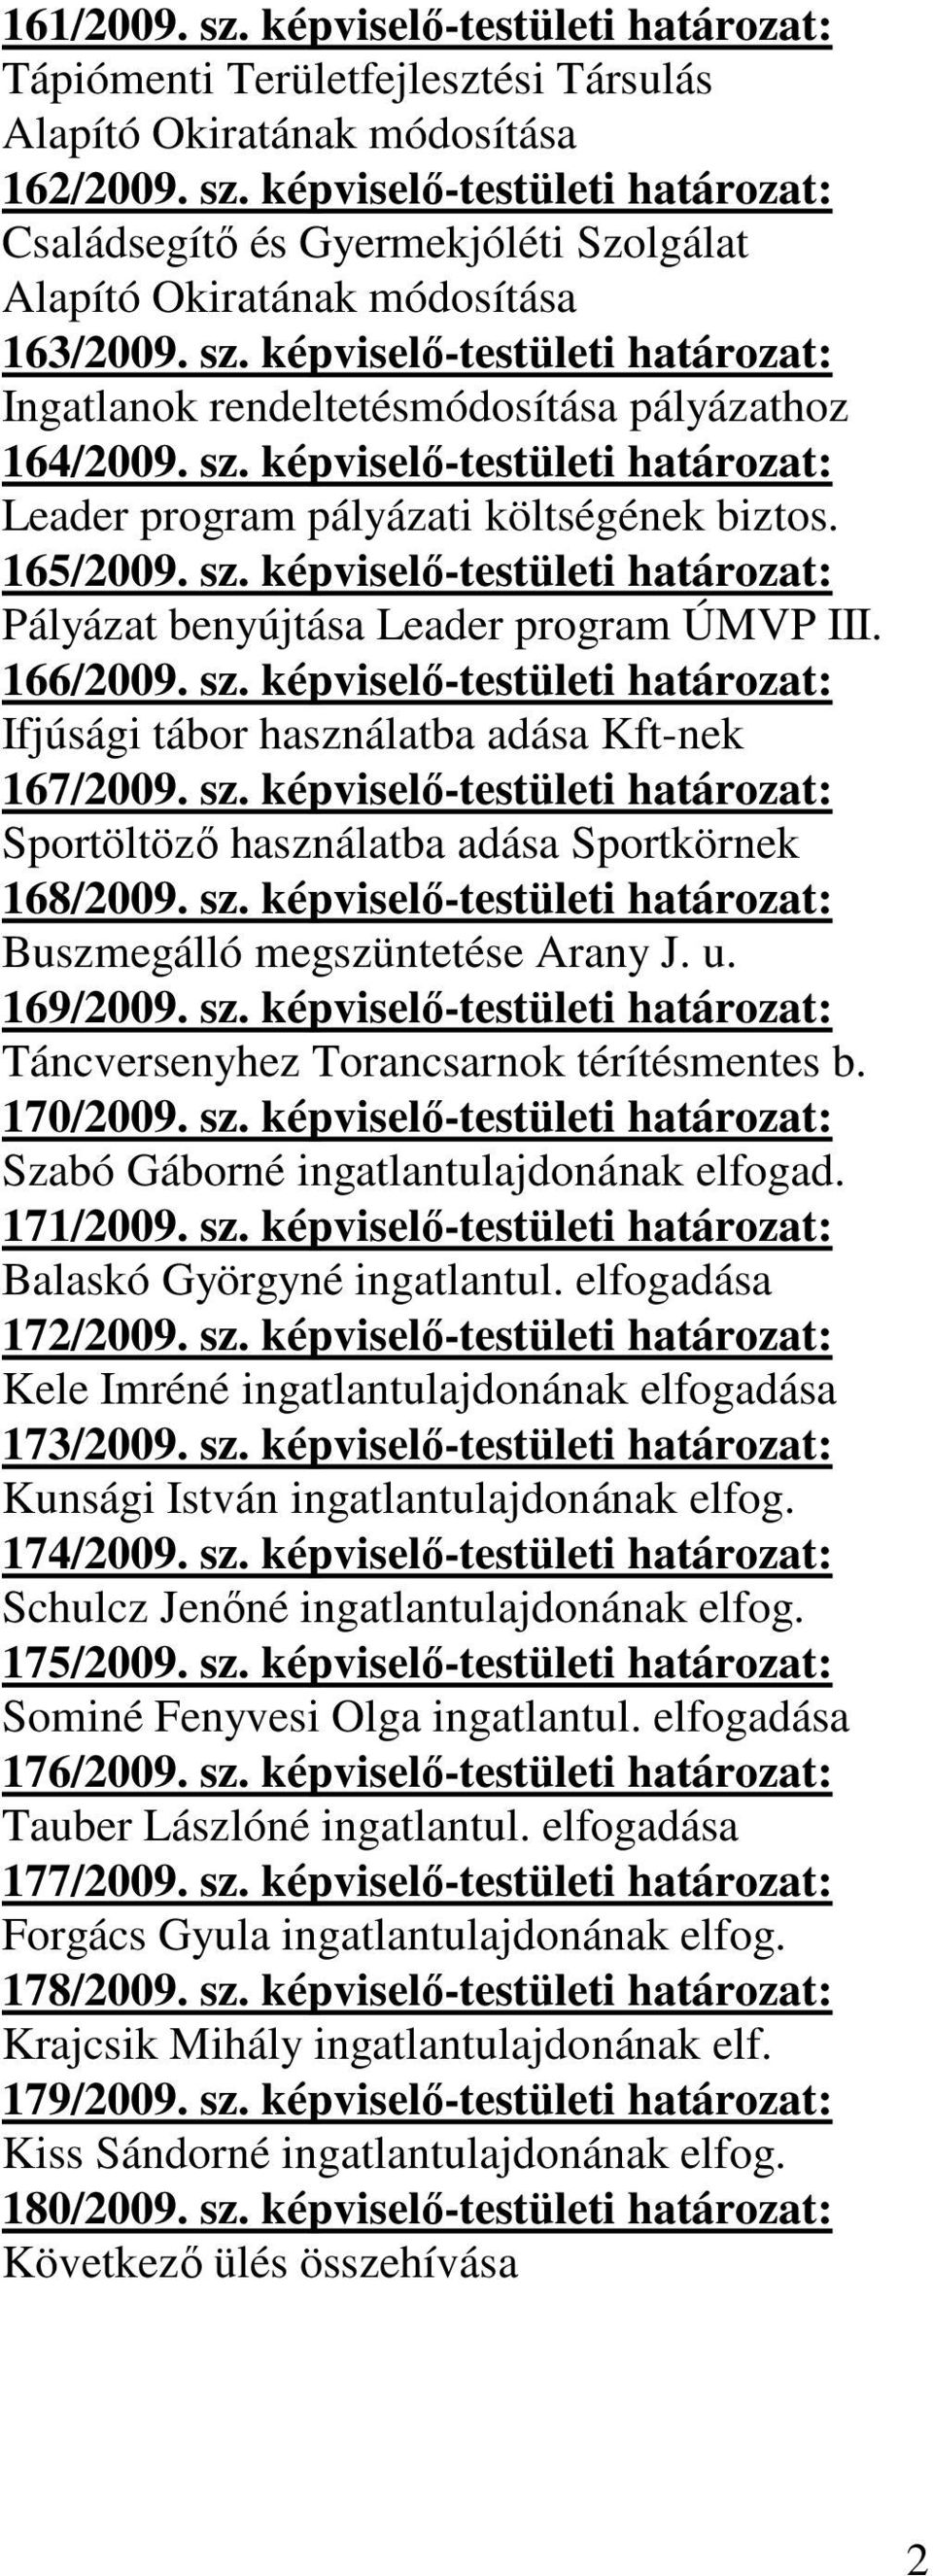 166/2009. sz. képviselő-testületi határozat: Ifjúsági tábor használatba adása Kft-nek 167/2009. sz. képviselő-testületi határozat: Sportöltöző használatba adása Sportkörnek 168/2009. sz. képviselő-testületi határozat: Buszmegálló megszüntetése Arany J.